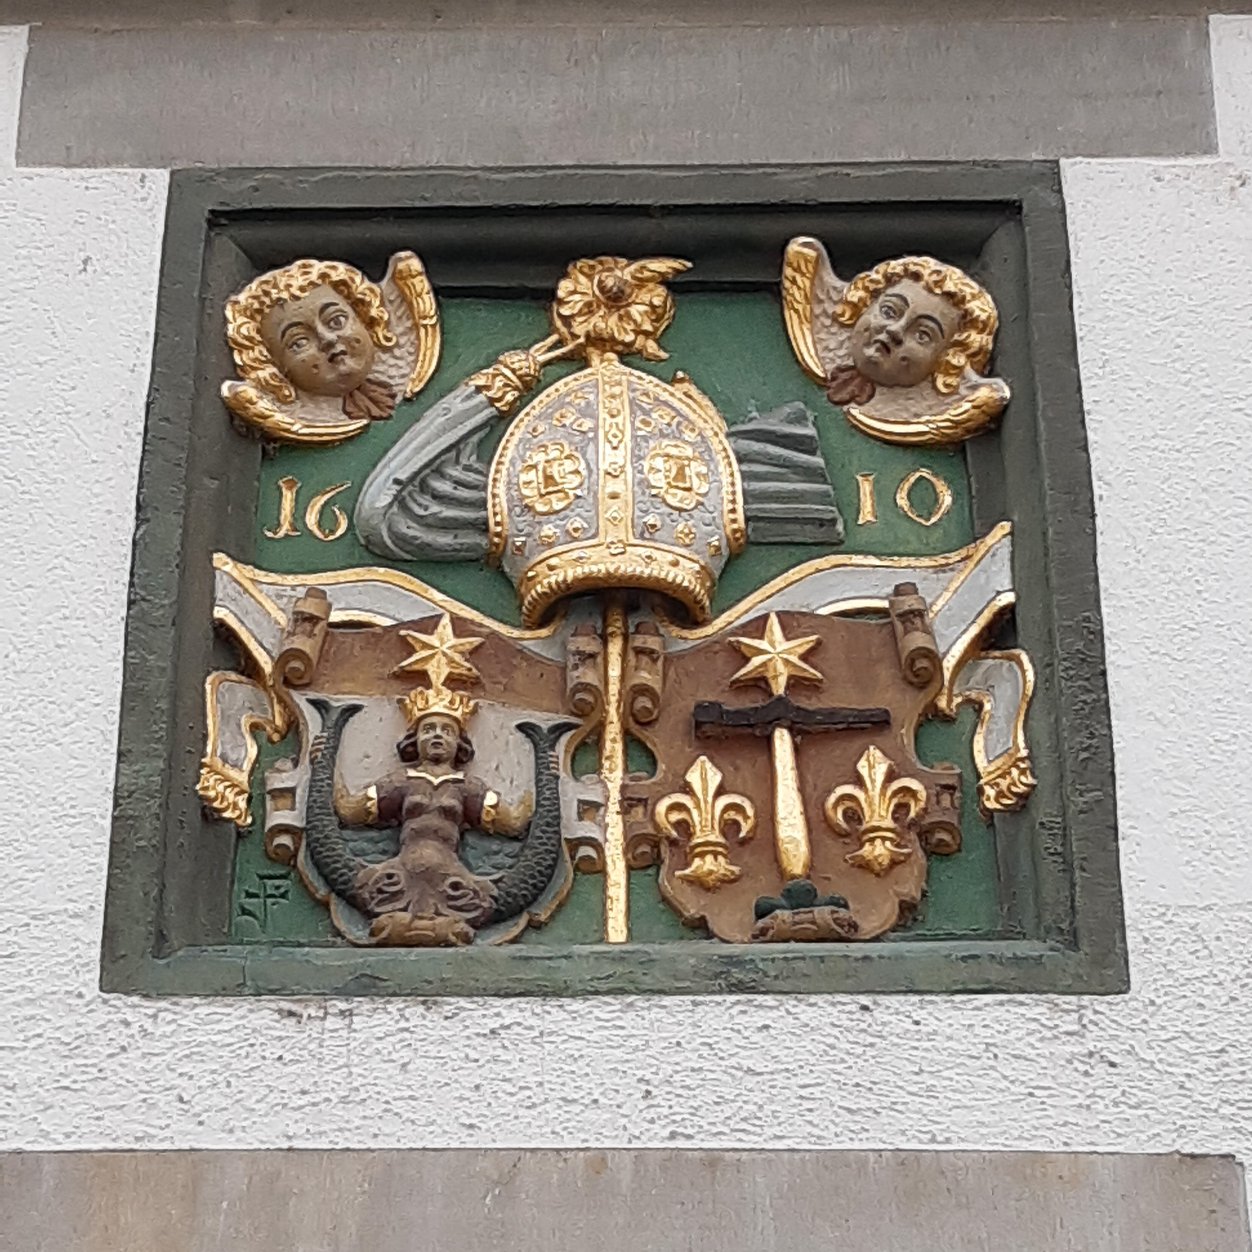 Darstellung des Wappens des Klosters: Meerjungfrau, Linien und Sternen.